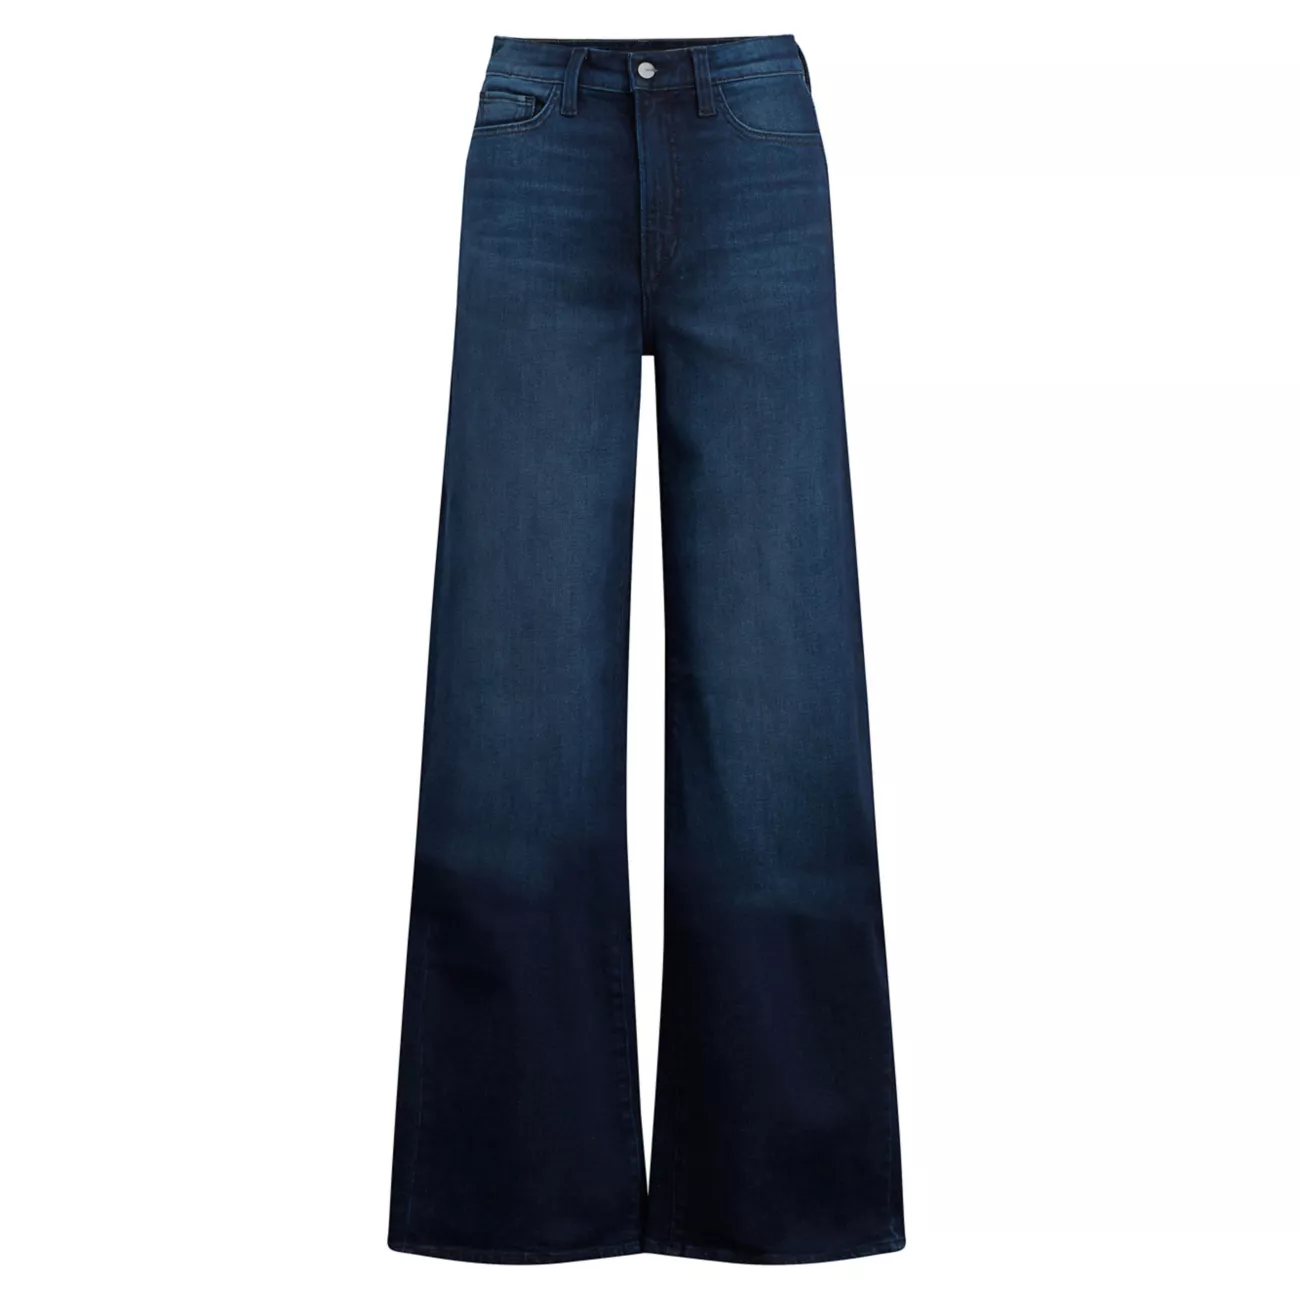 Эластичные широкие джинсы Mia с высокой посадкой Joe's Jeans